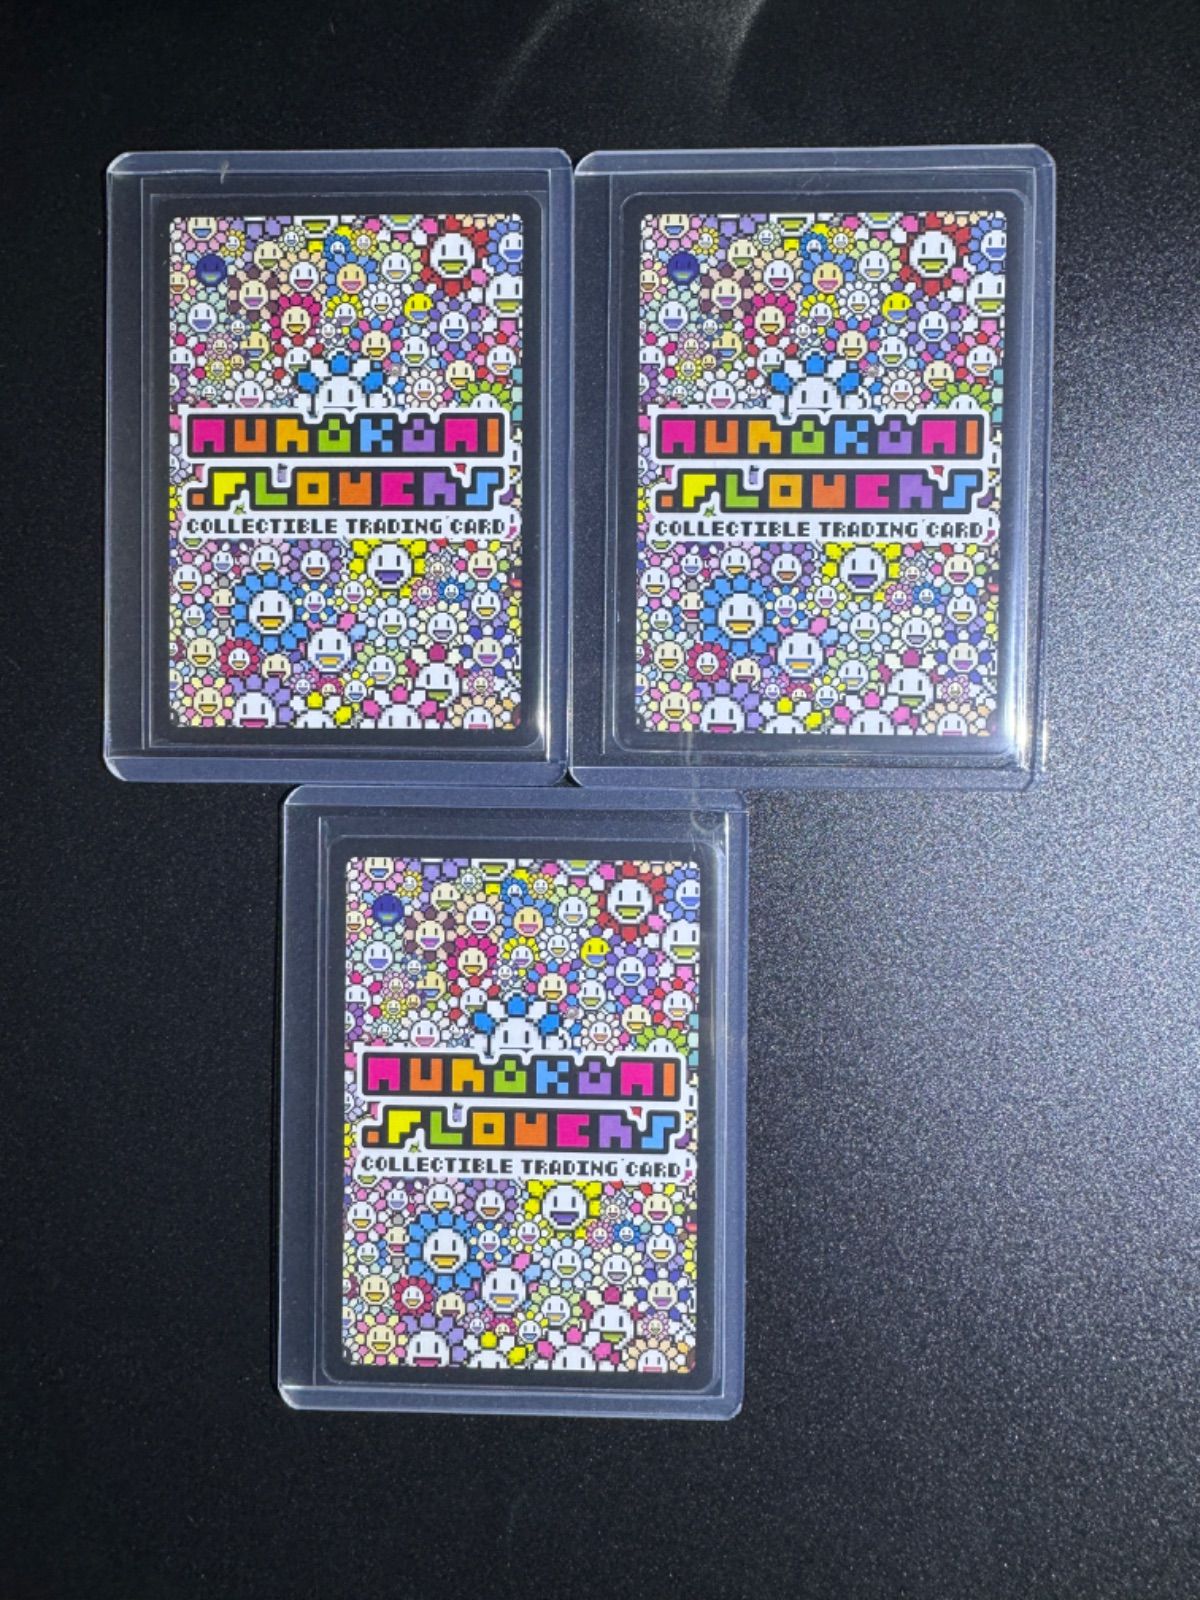 108フラワーズ Murakami.Flowers 【SR】ENG 英語版 全種類 12枚 